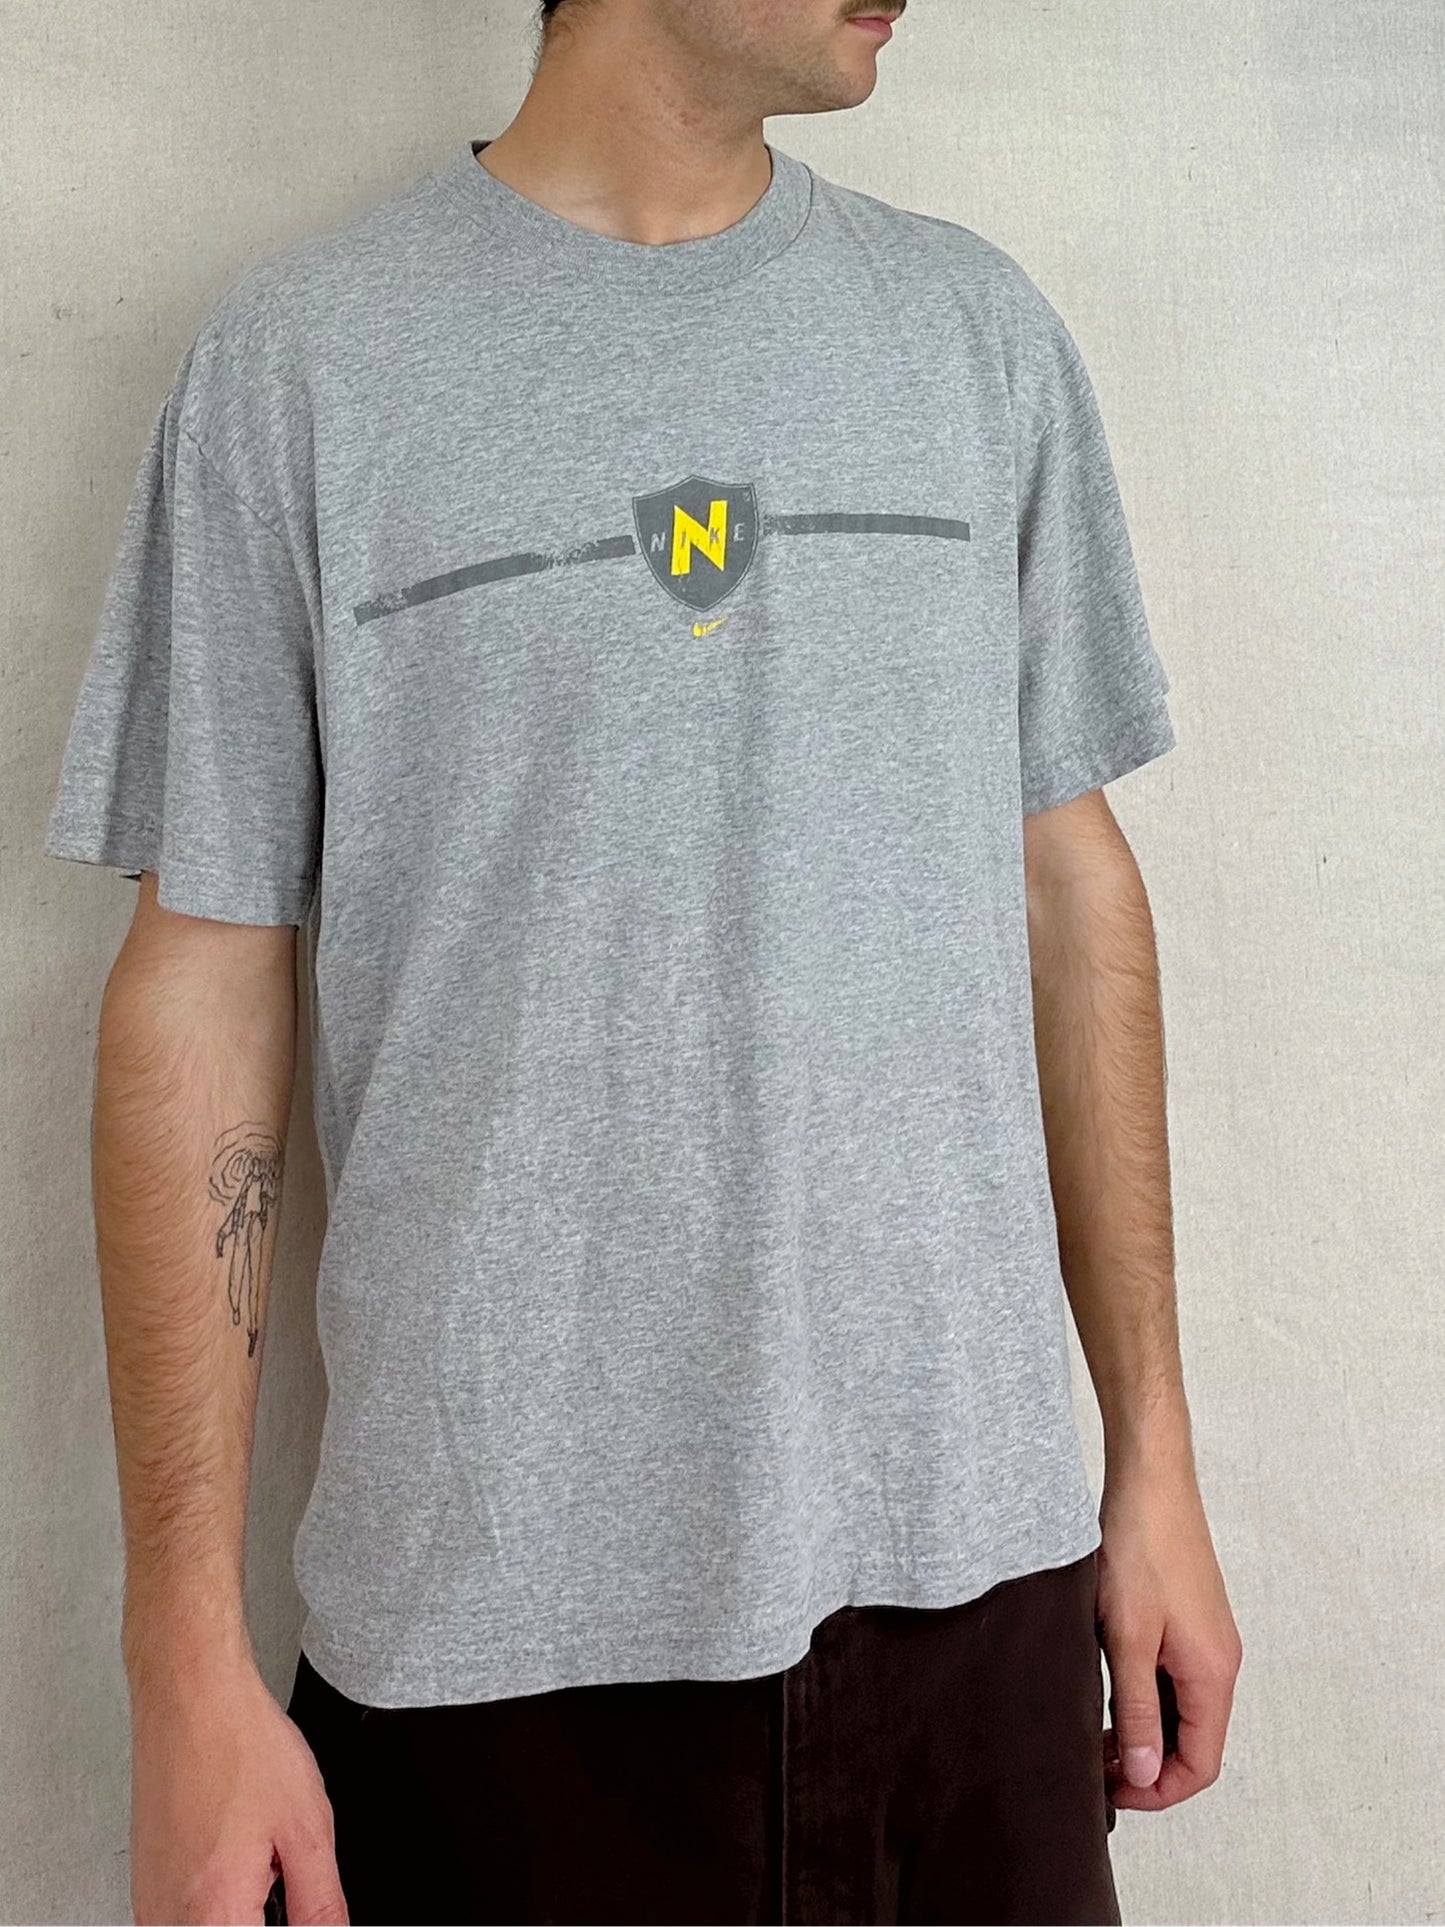 90's Nike Vintage Light T-Shirt Size M